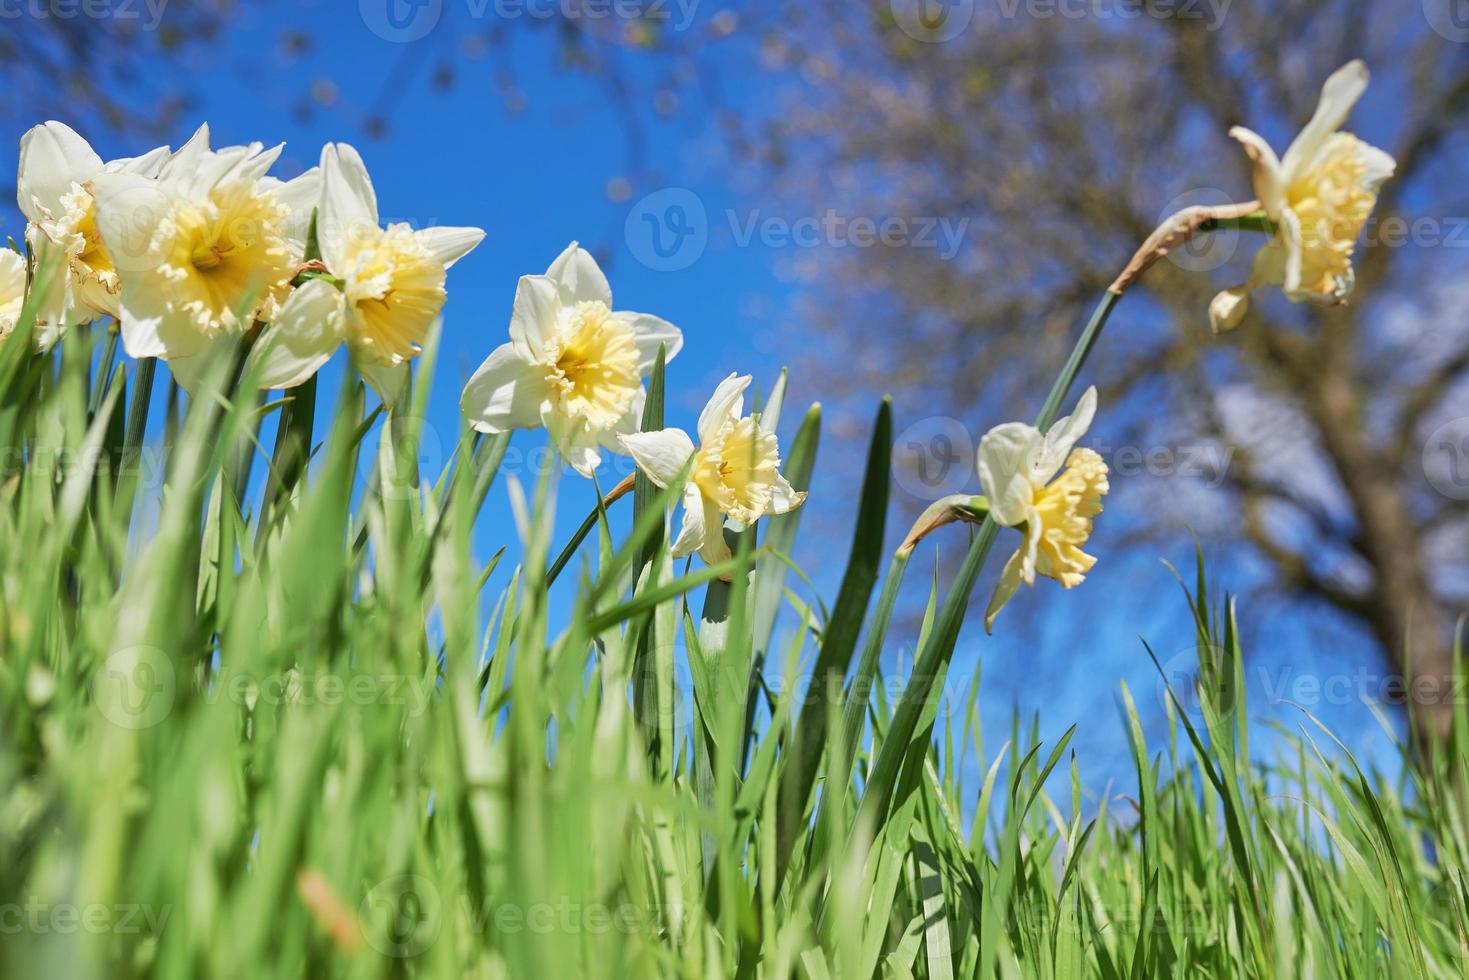 dichtbij omhoog wit en geel narcissen in voorjaar zonnig dag bodem visie, naar beneden punt van schieten foto